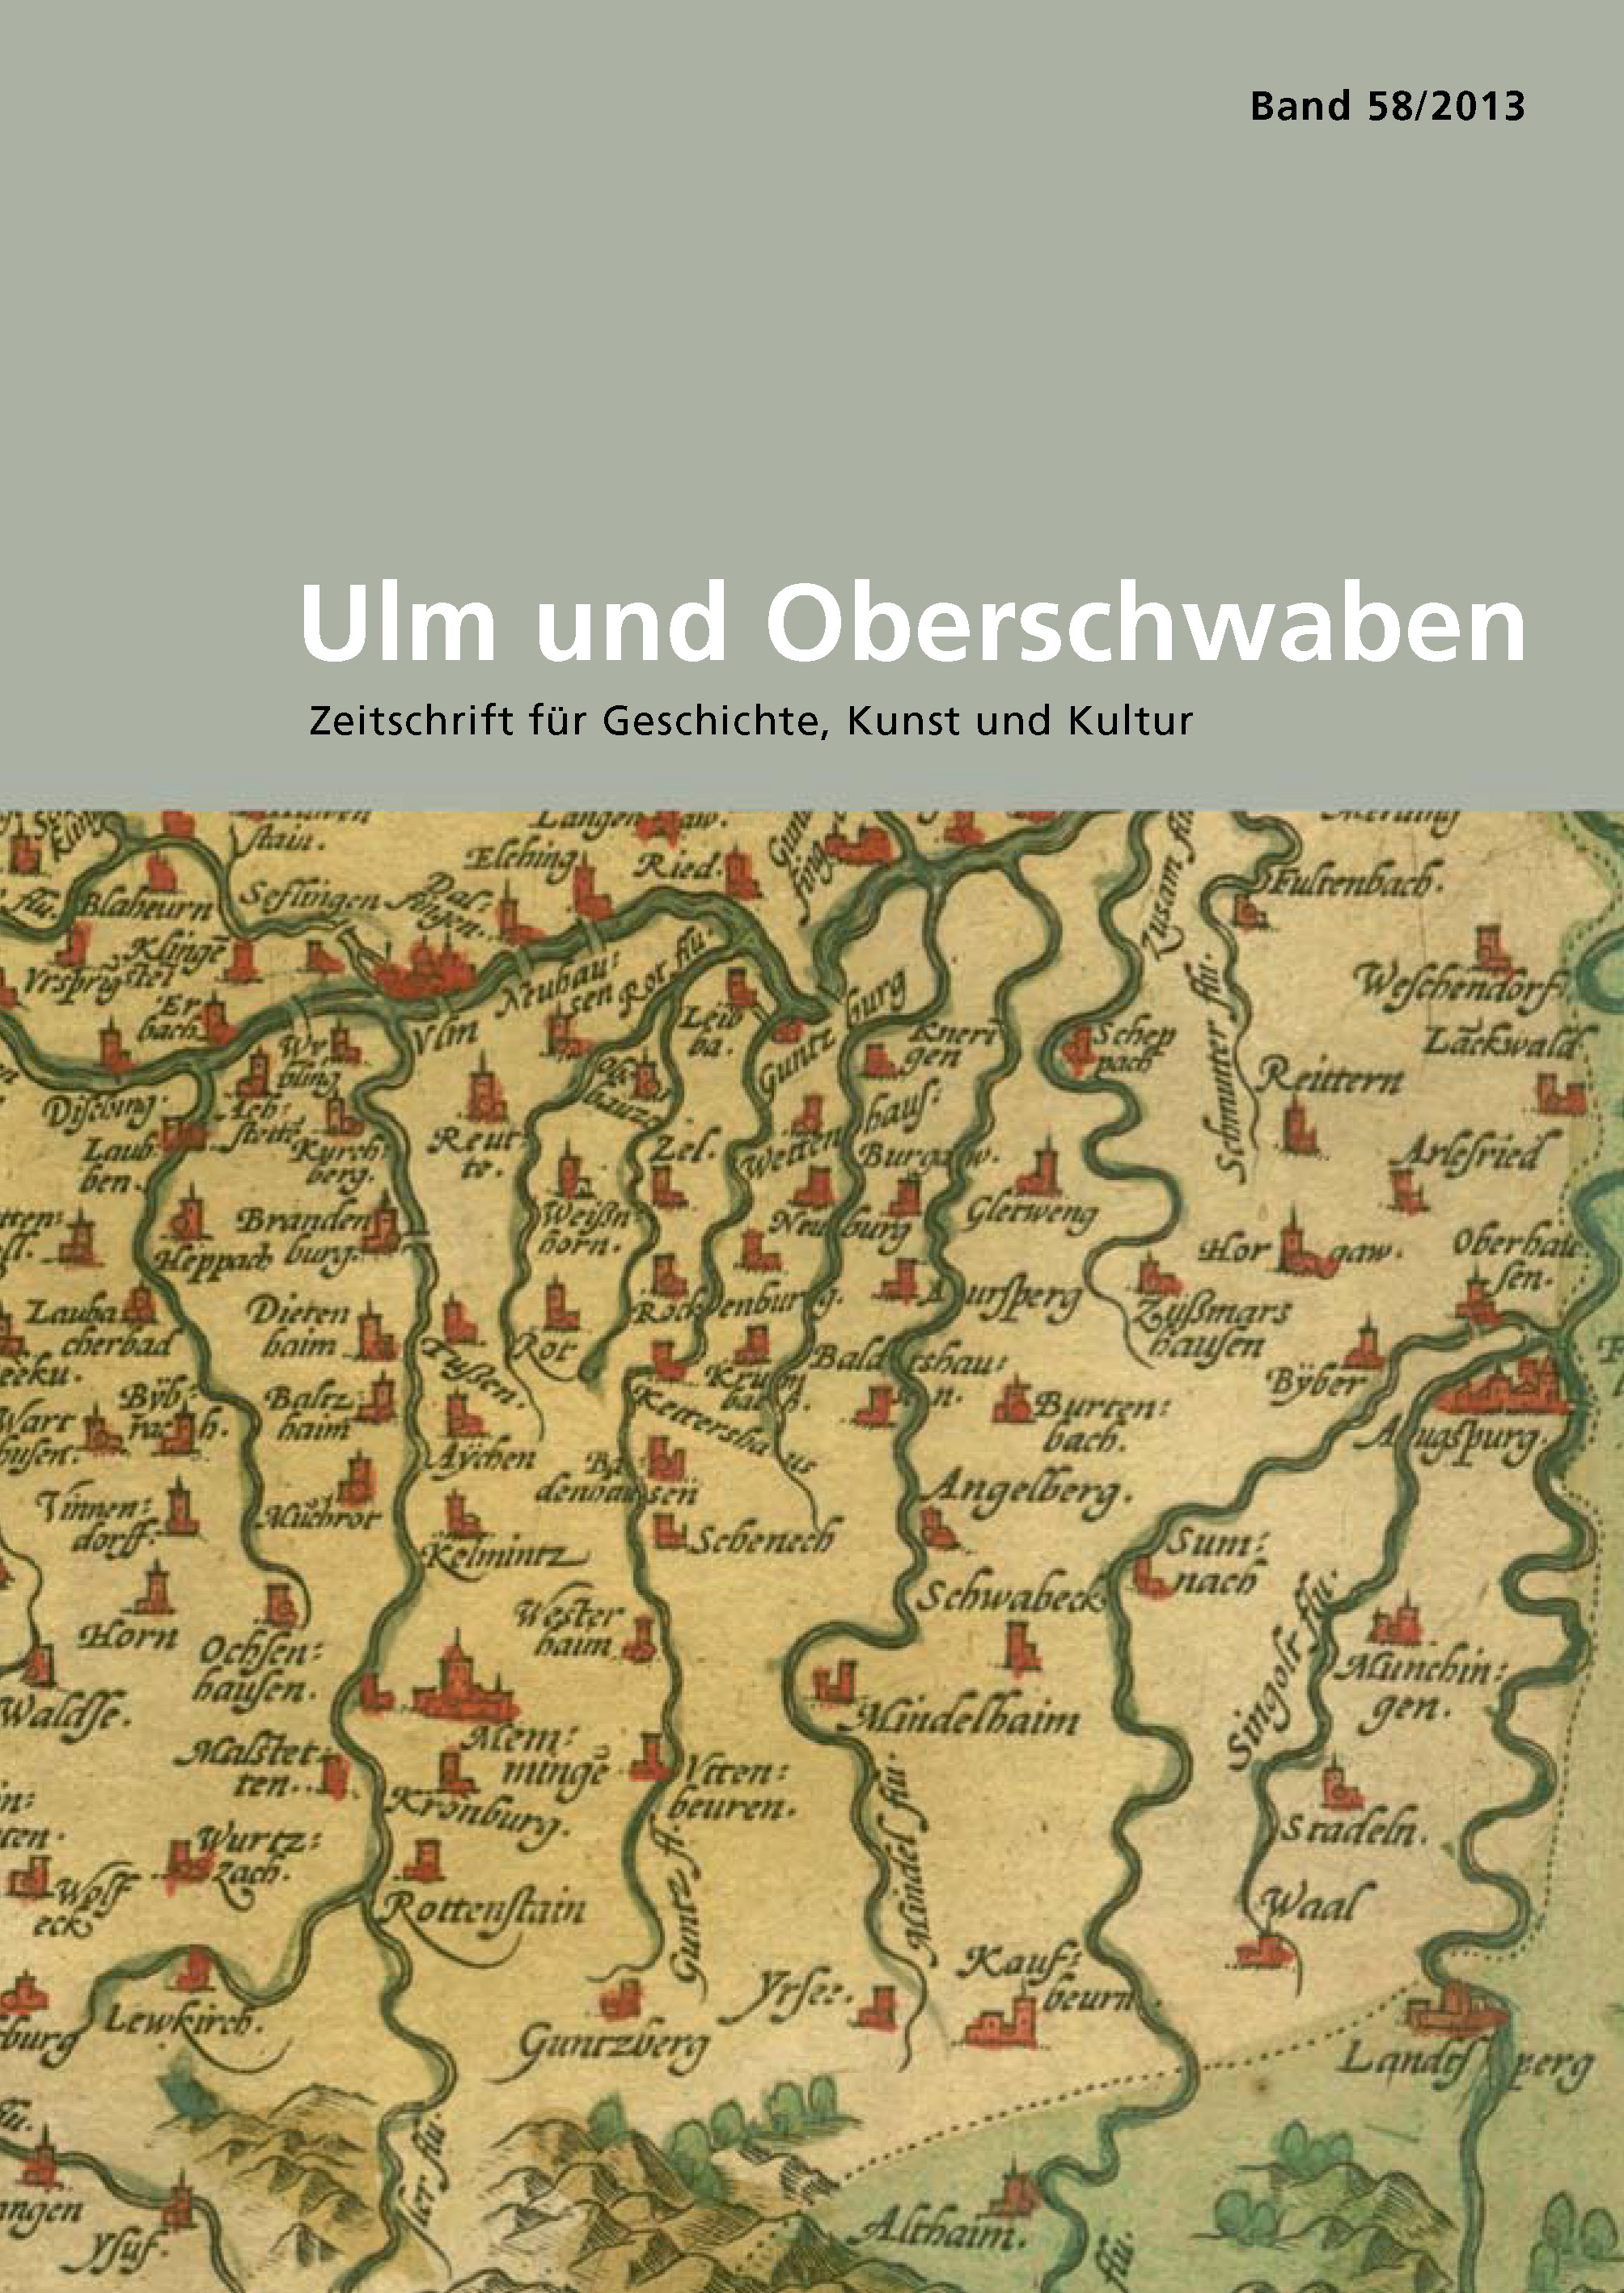                     Ansehen Bd. 58 (2013): Ulm und Oberschwaben
                